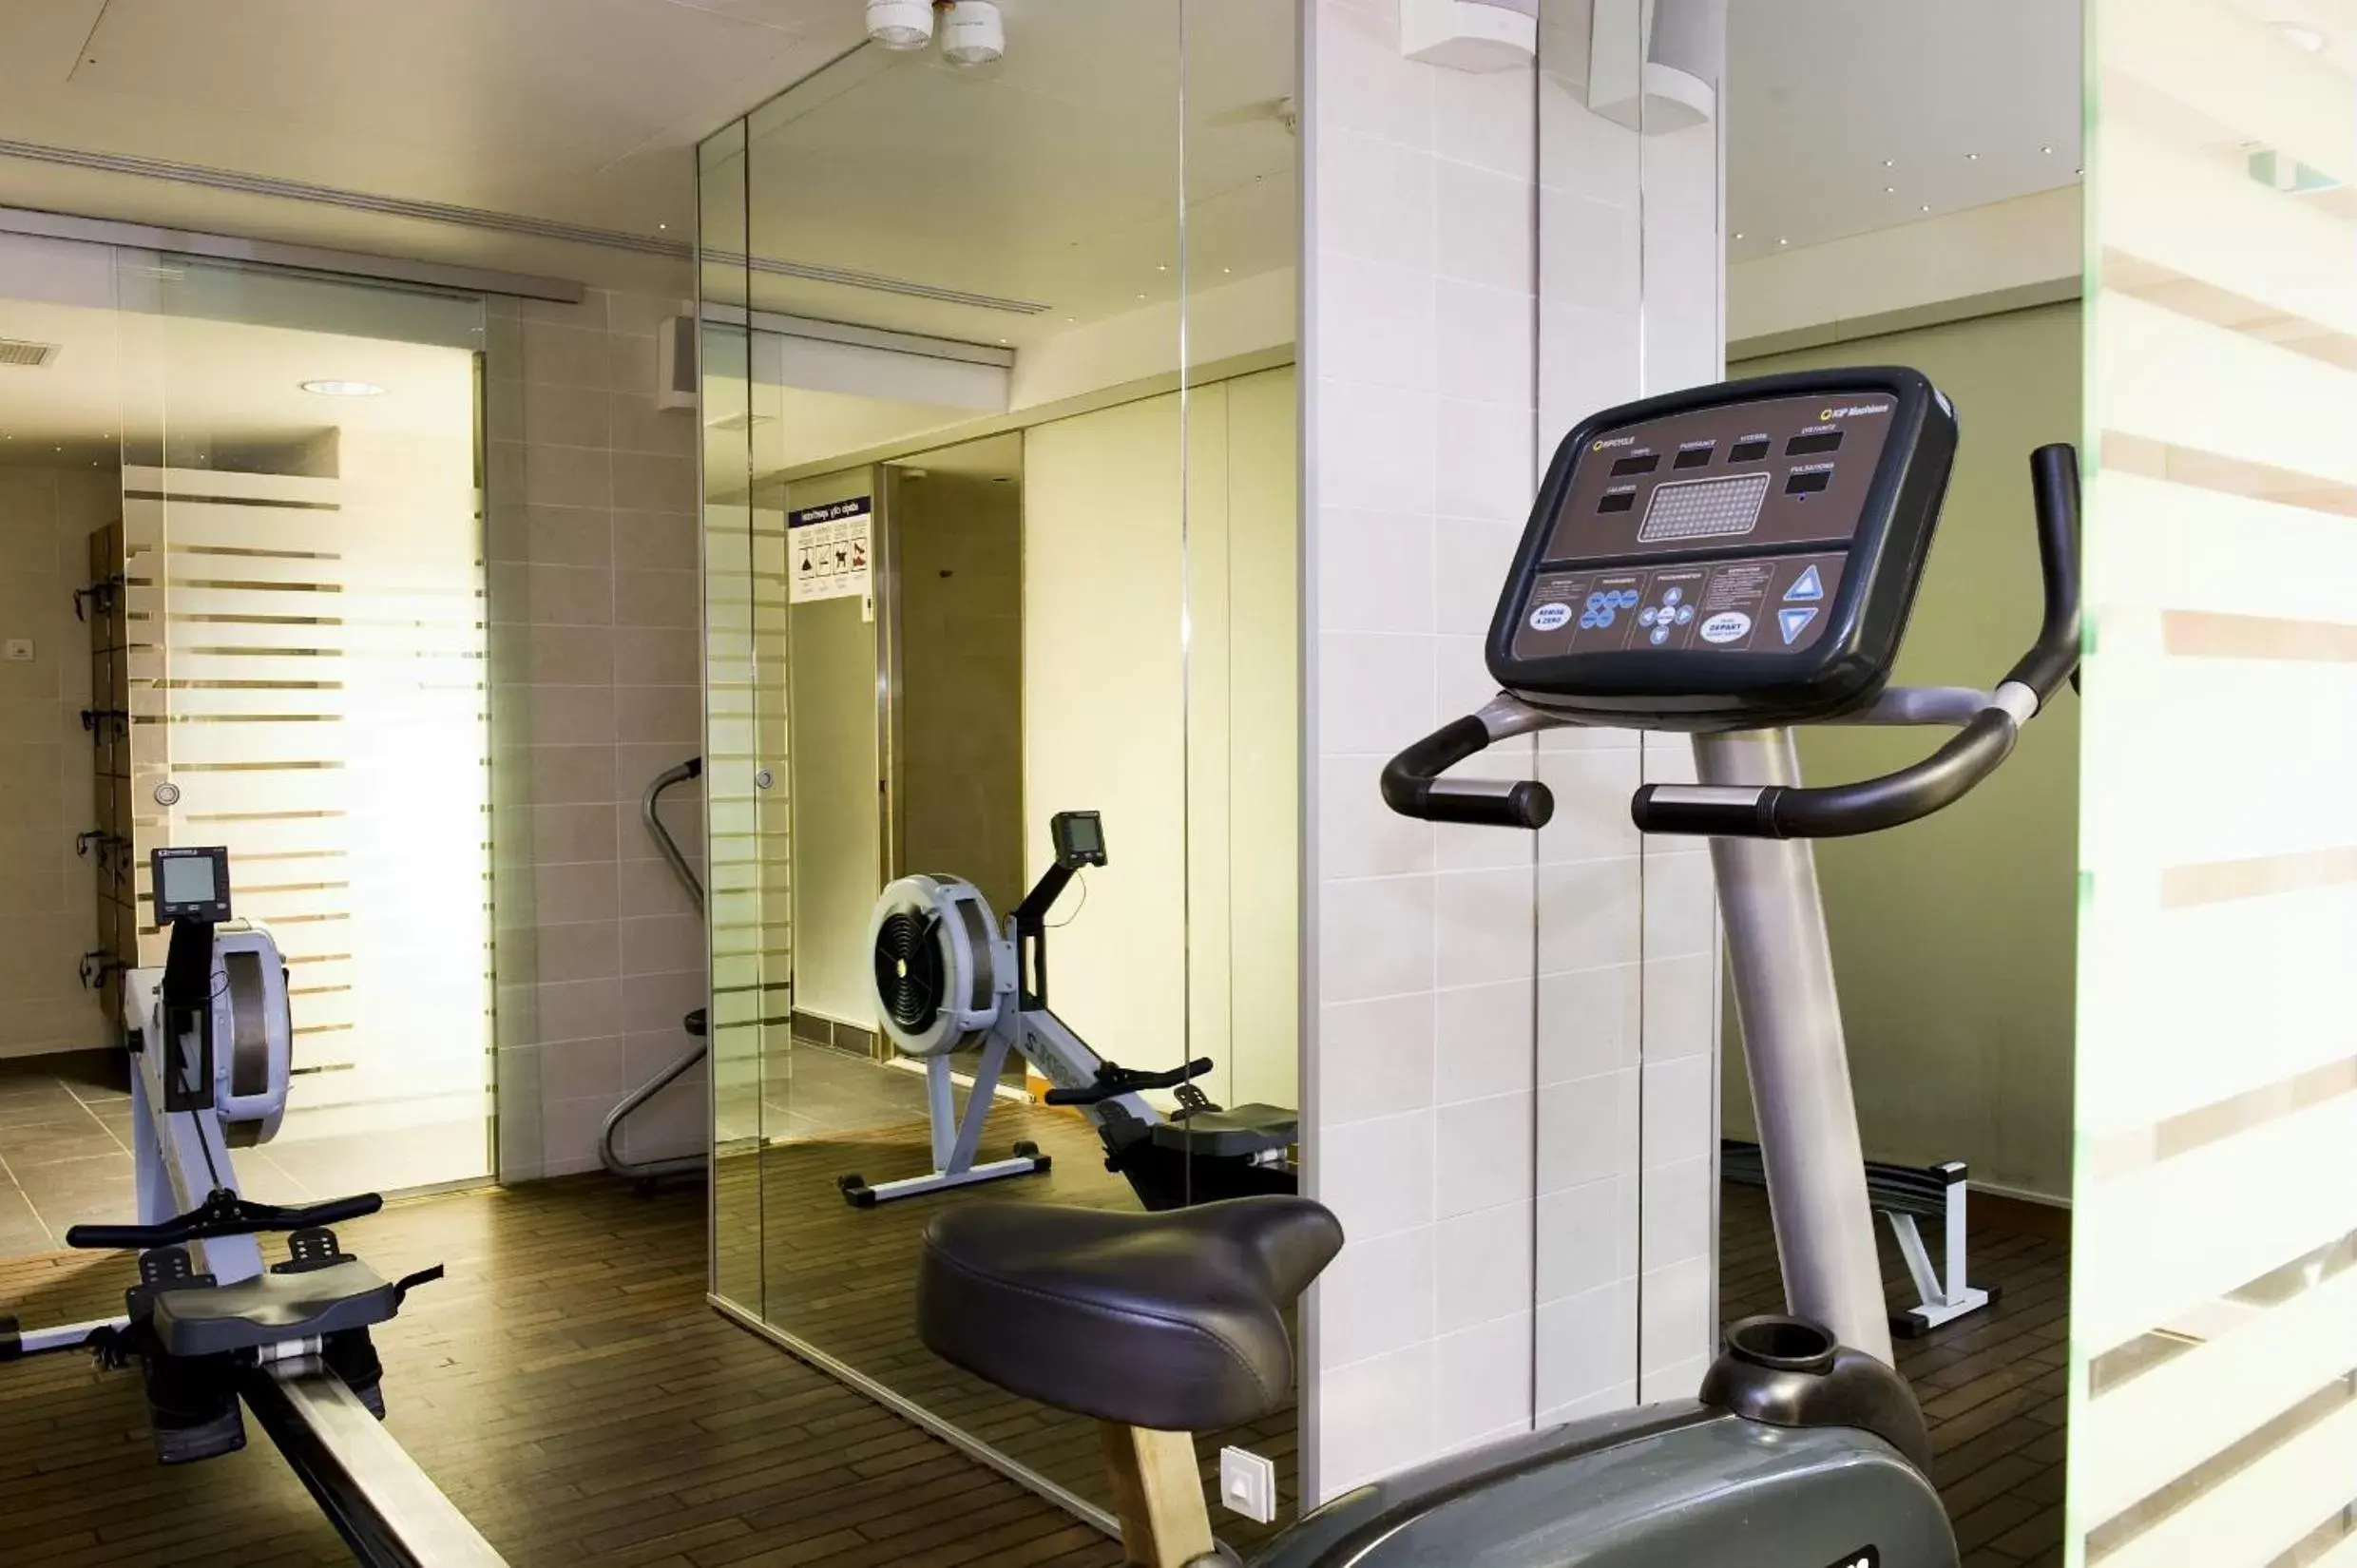 Fitness centre/facilities, Fitness Center/Facilities in Aparthotel Adagio Paris Centre Tour Eiffel